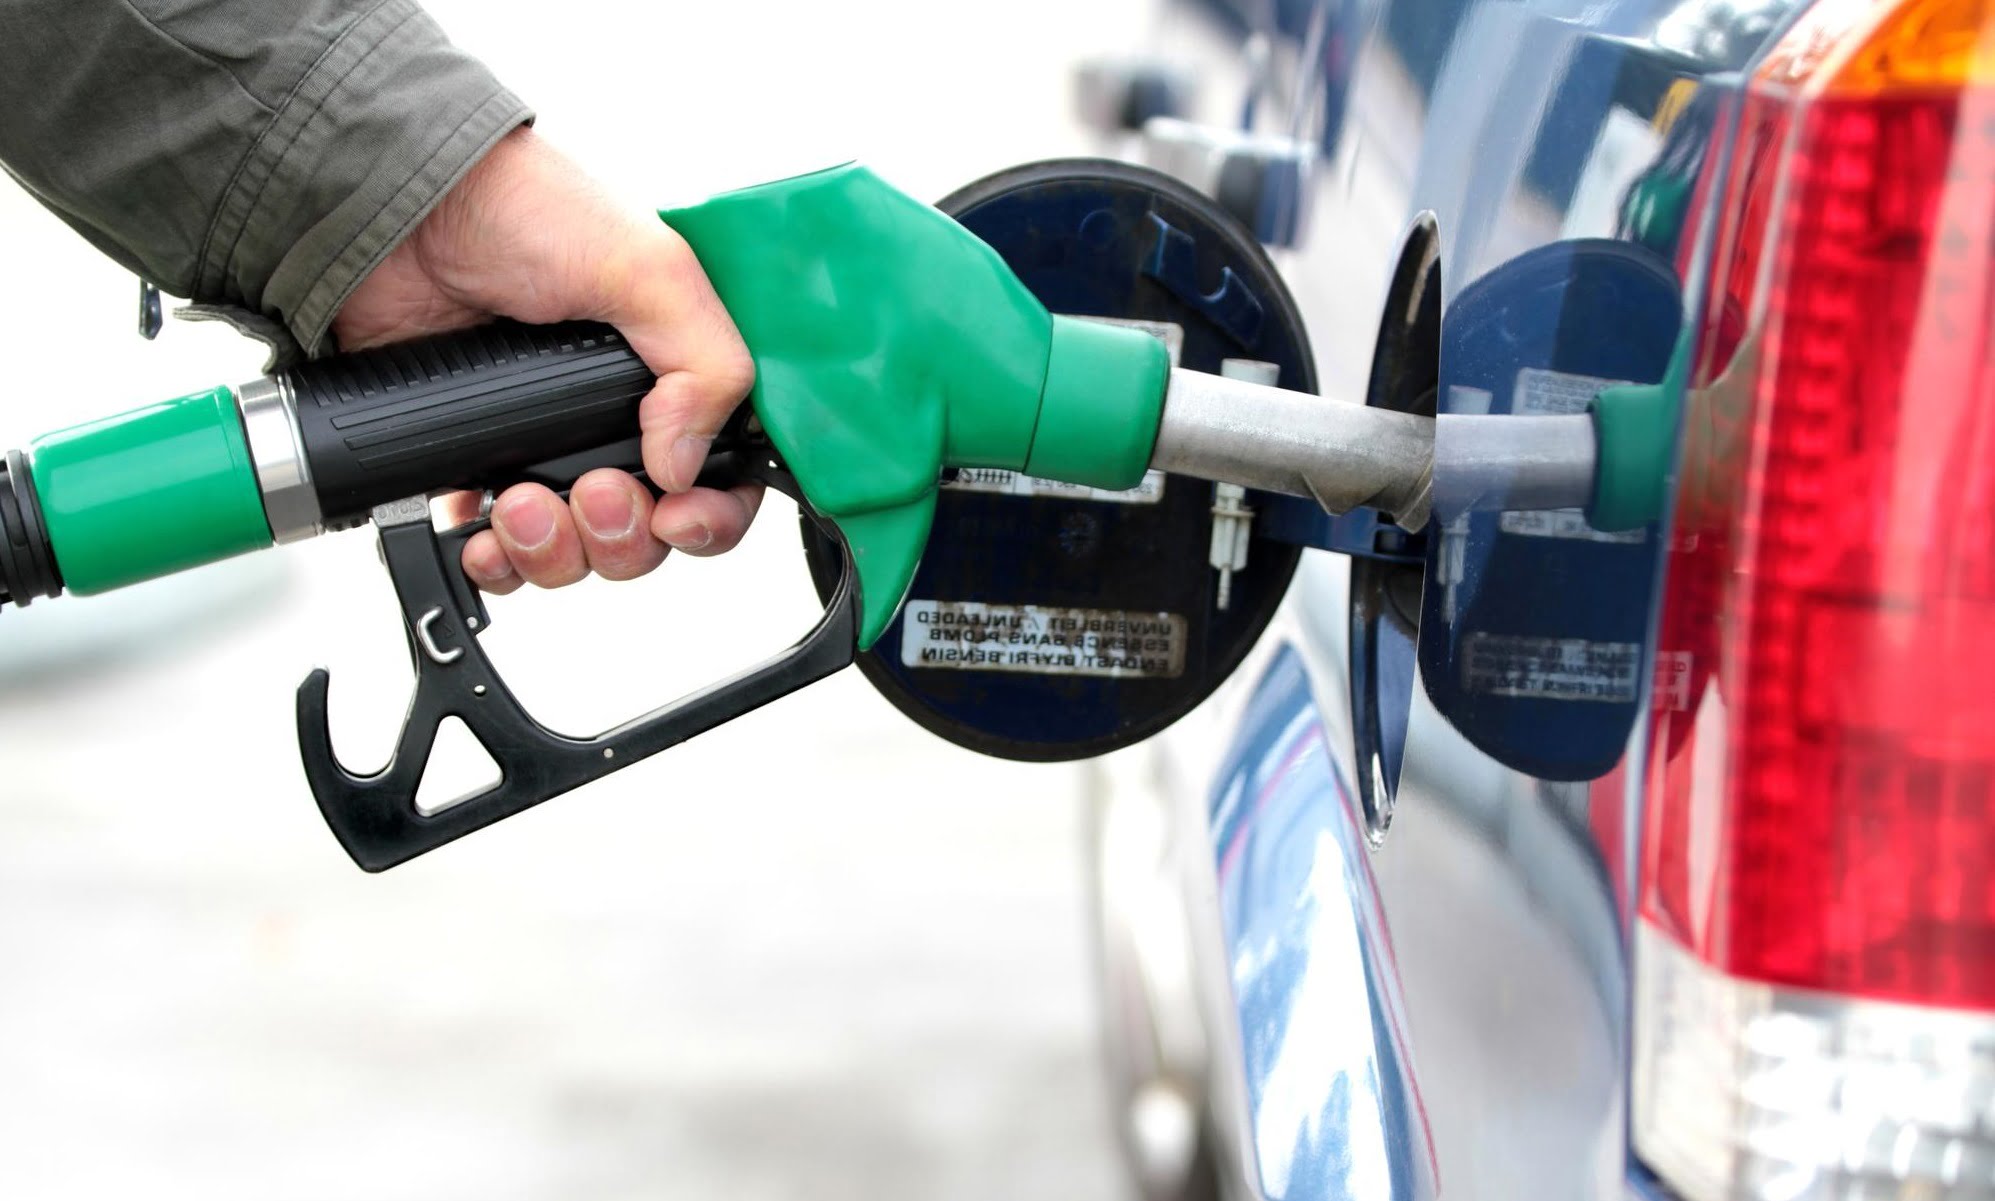 افزایش قیمت سوخت چه سود و زیانی دارد؟-آسان بار-آسان پدیا-asanbar.ir